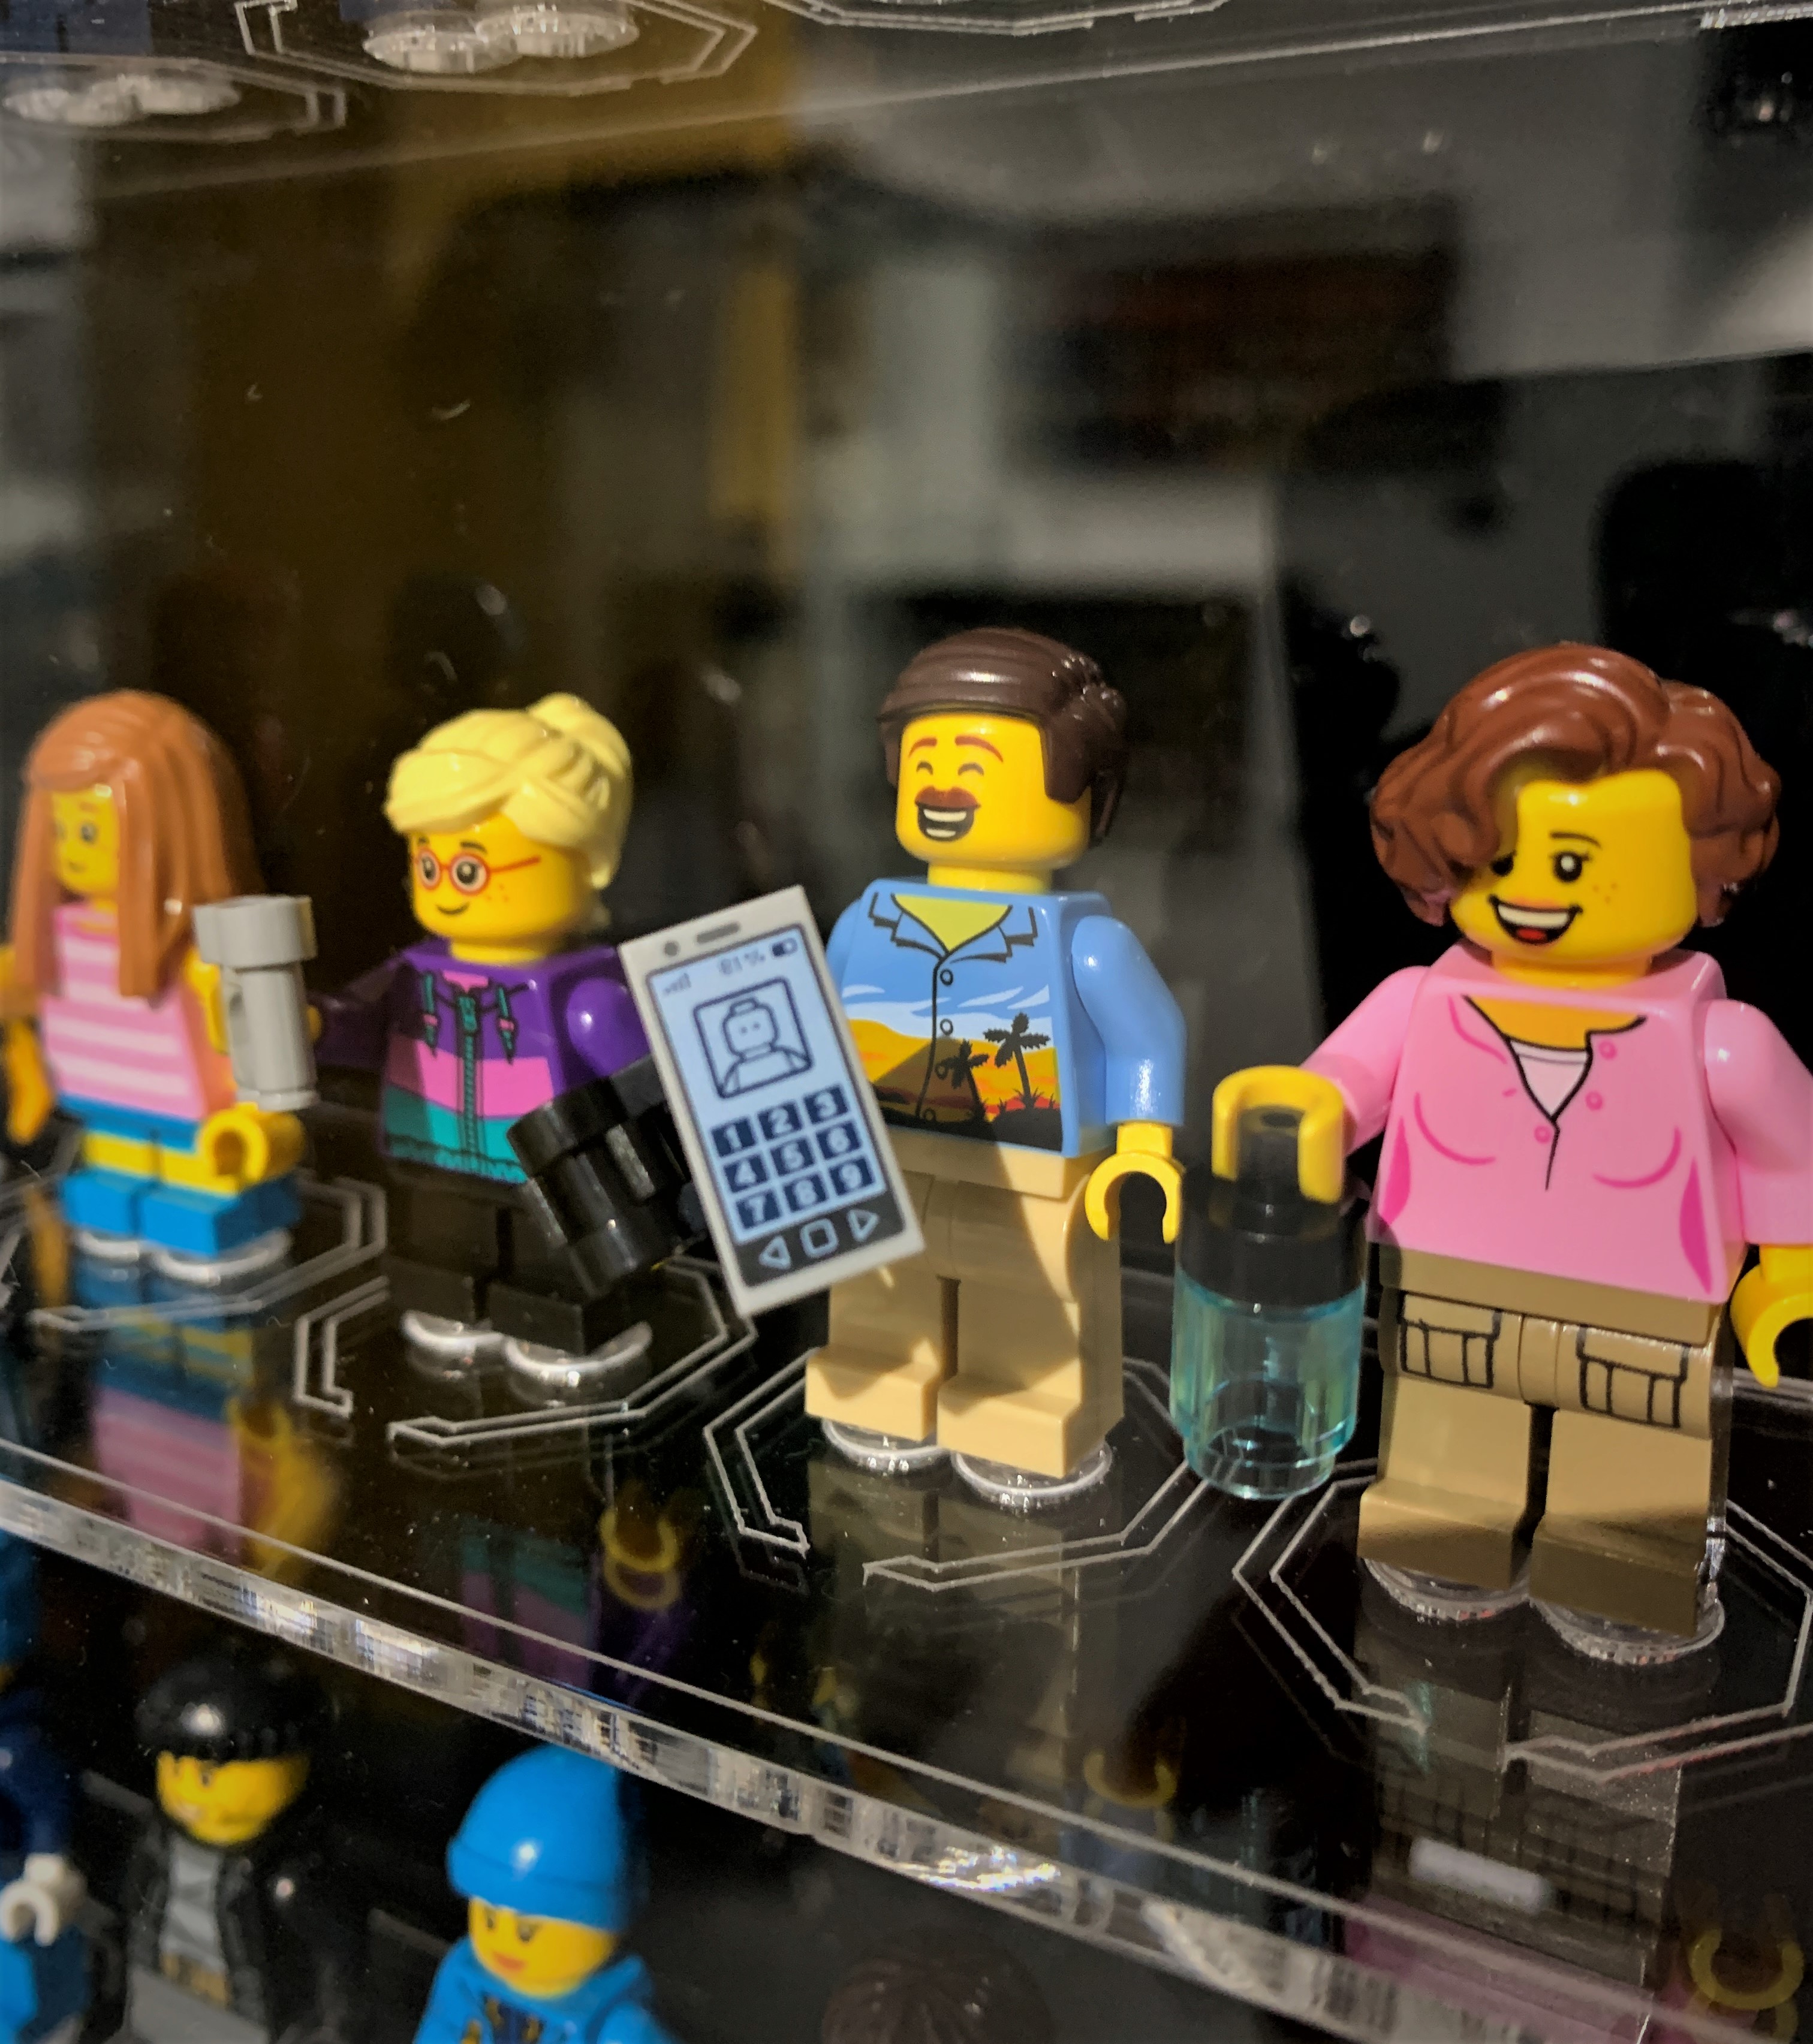 Relacja z wizyty w Bricks&Figs - nowym muzeum minifigurek LEGO® w Polsce